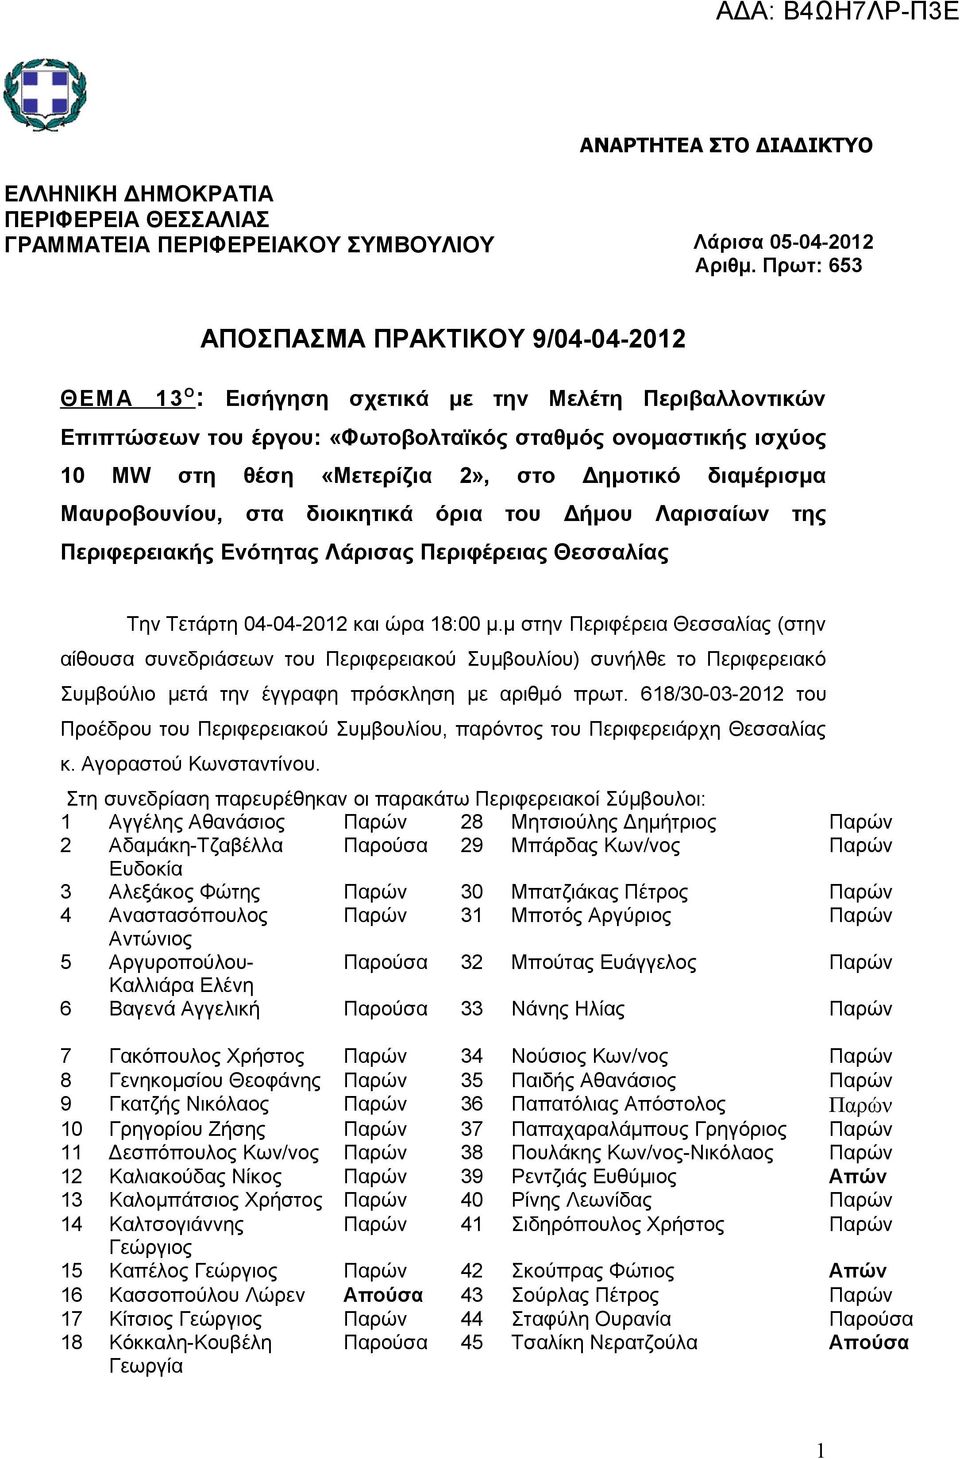 Δημοτικό διαμέρισμα Μαυροβουνίου, στα διοικητικά όρια του Δήμου Λαρισαίων της Περιφερειακής Ενότητας Λάρισας Περιφέρειας Θεσσαλίας Την Τετάρτη 04-04-2012 και ώρα 18:00 μ.